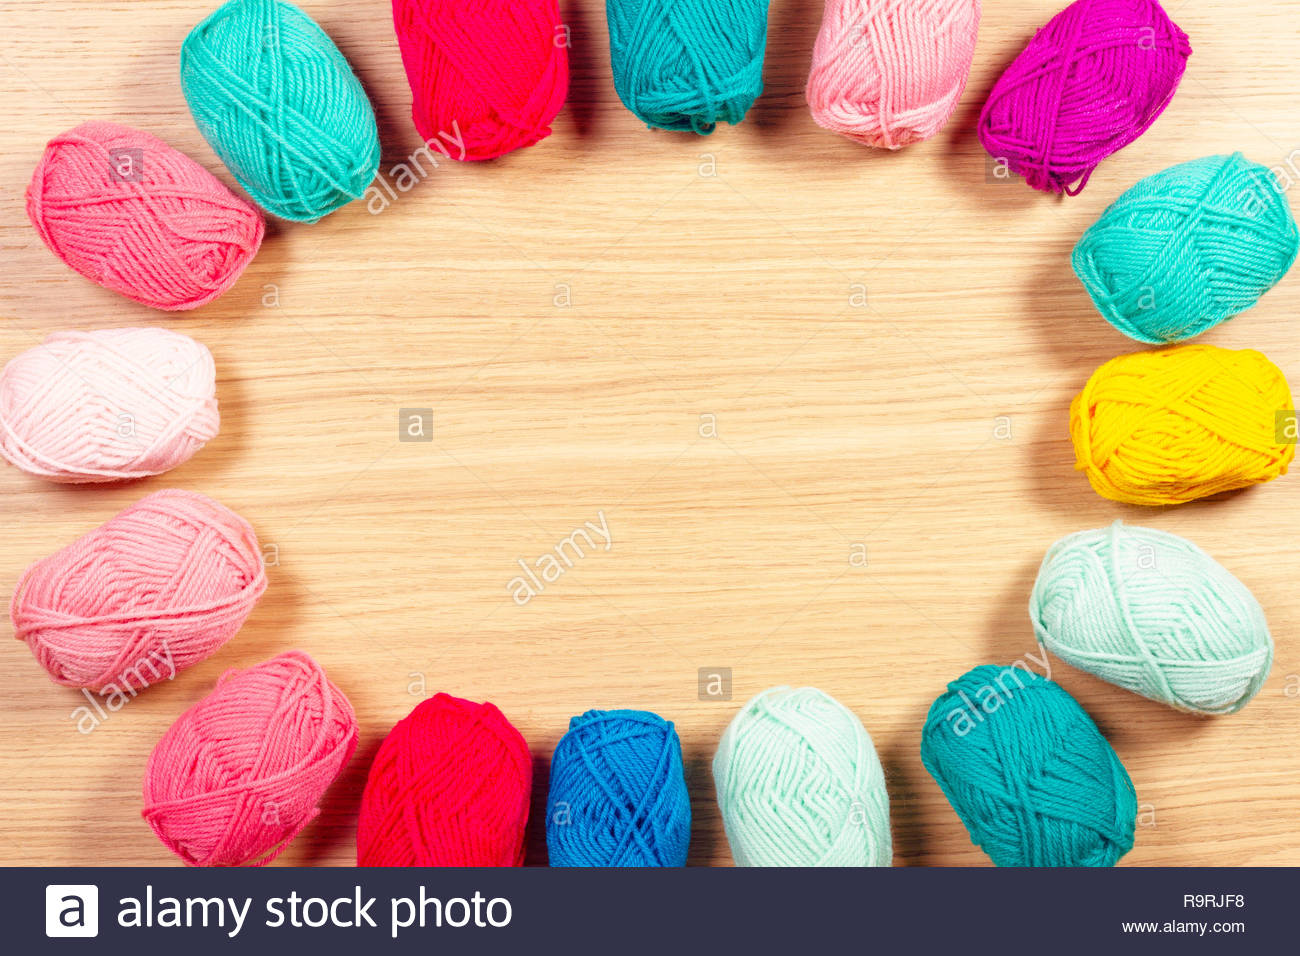 Hình ảnh len cotton màu sắc đưa người xem đến với sự đa dạng trong thiết kế. Chất liệu cotton thấm hút tốt và thoáng khí, giúp bạn cảm thấy thoải mái trong mọi hoạt động. Các màu sắc tươi sáng, xinh đẹp sẽ giúp bạn tạo ra những sản phẩm len độc đáo.